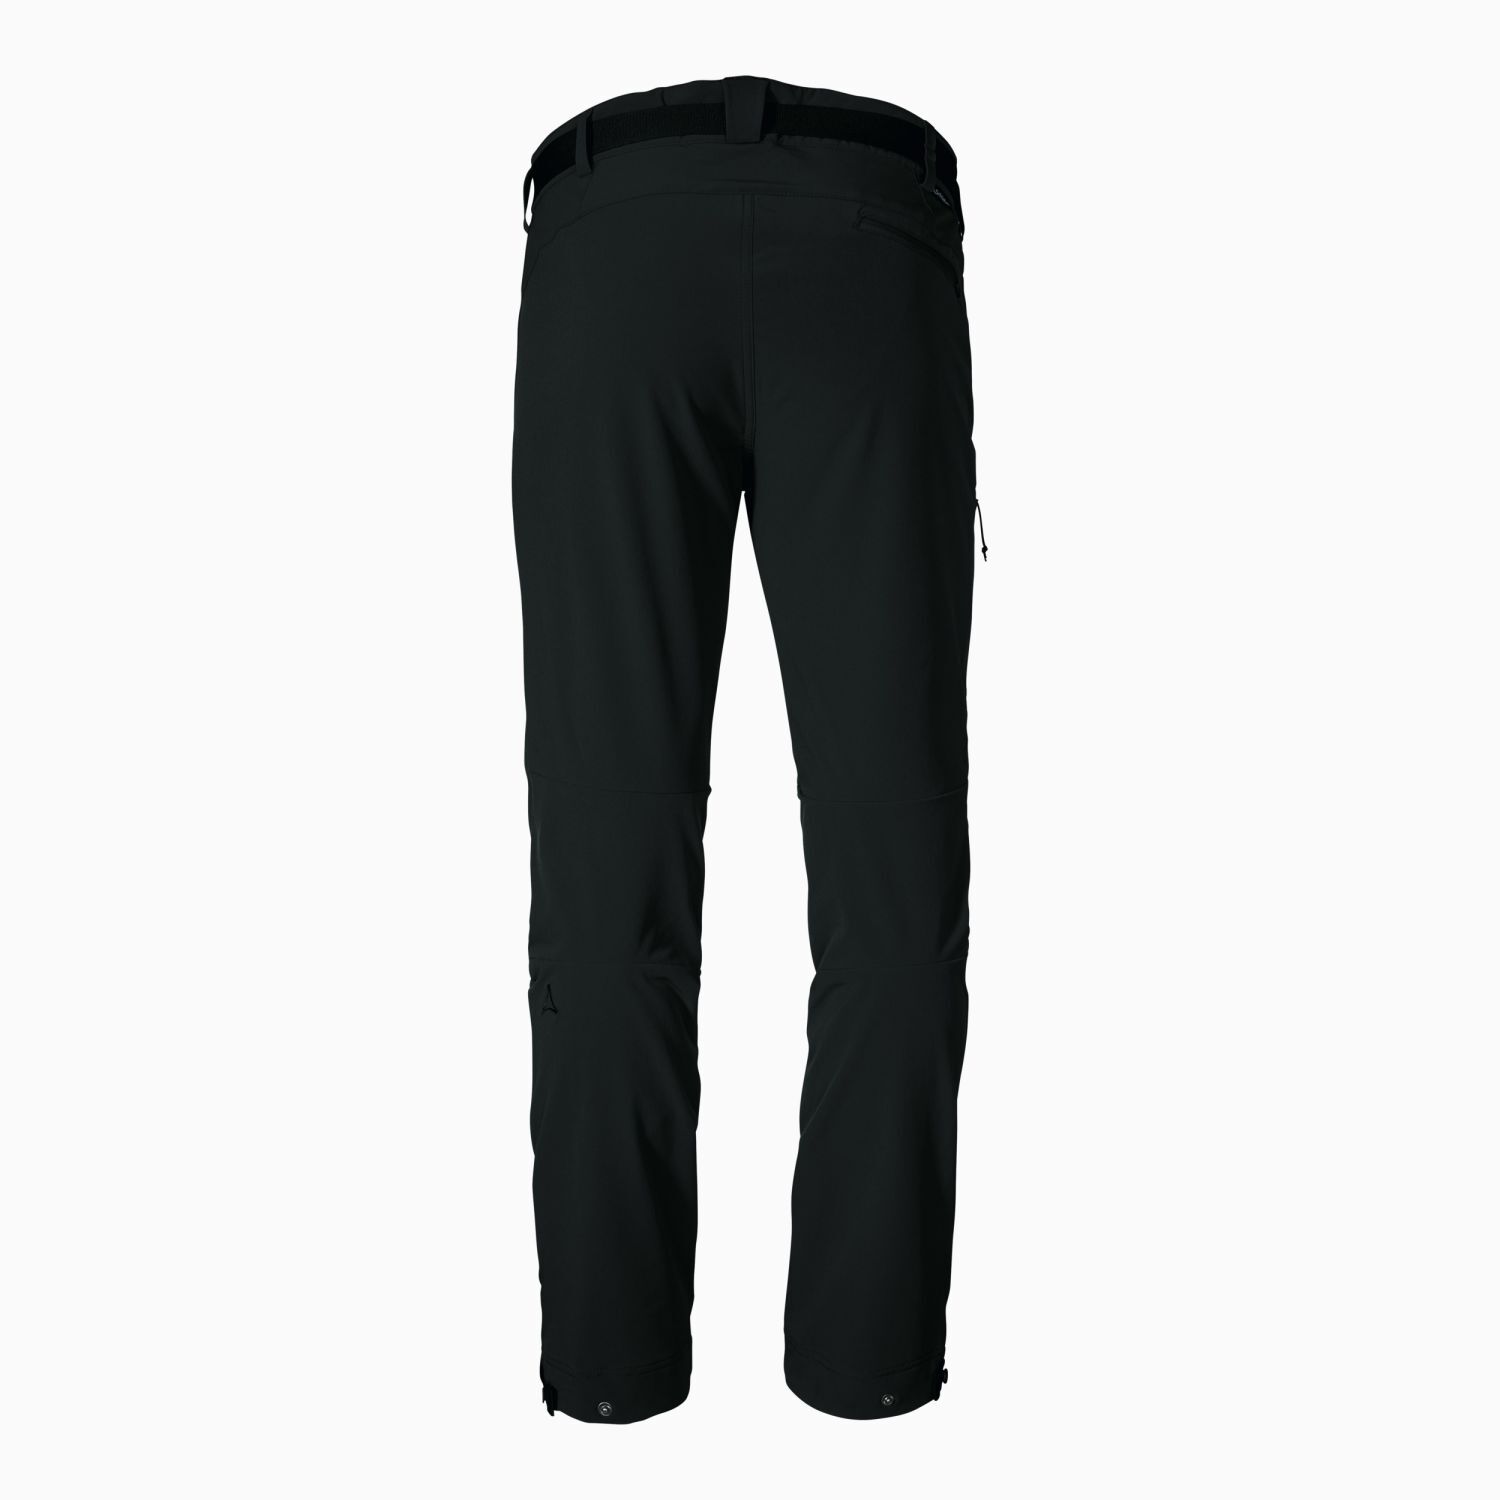 Schöffel Pants Taibun - Walking trousers - Men's